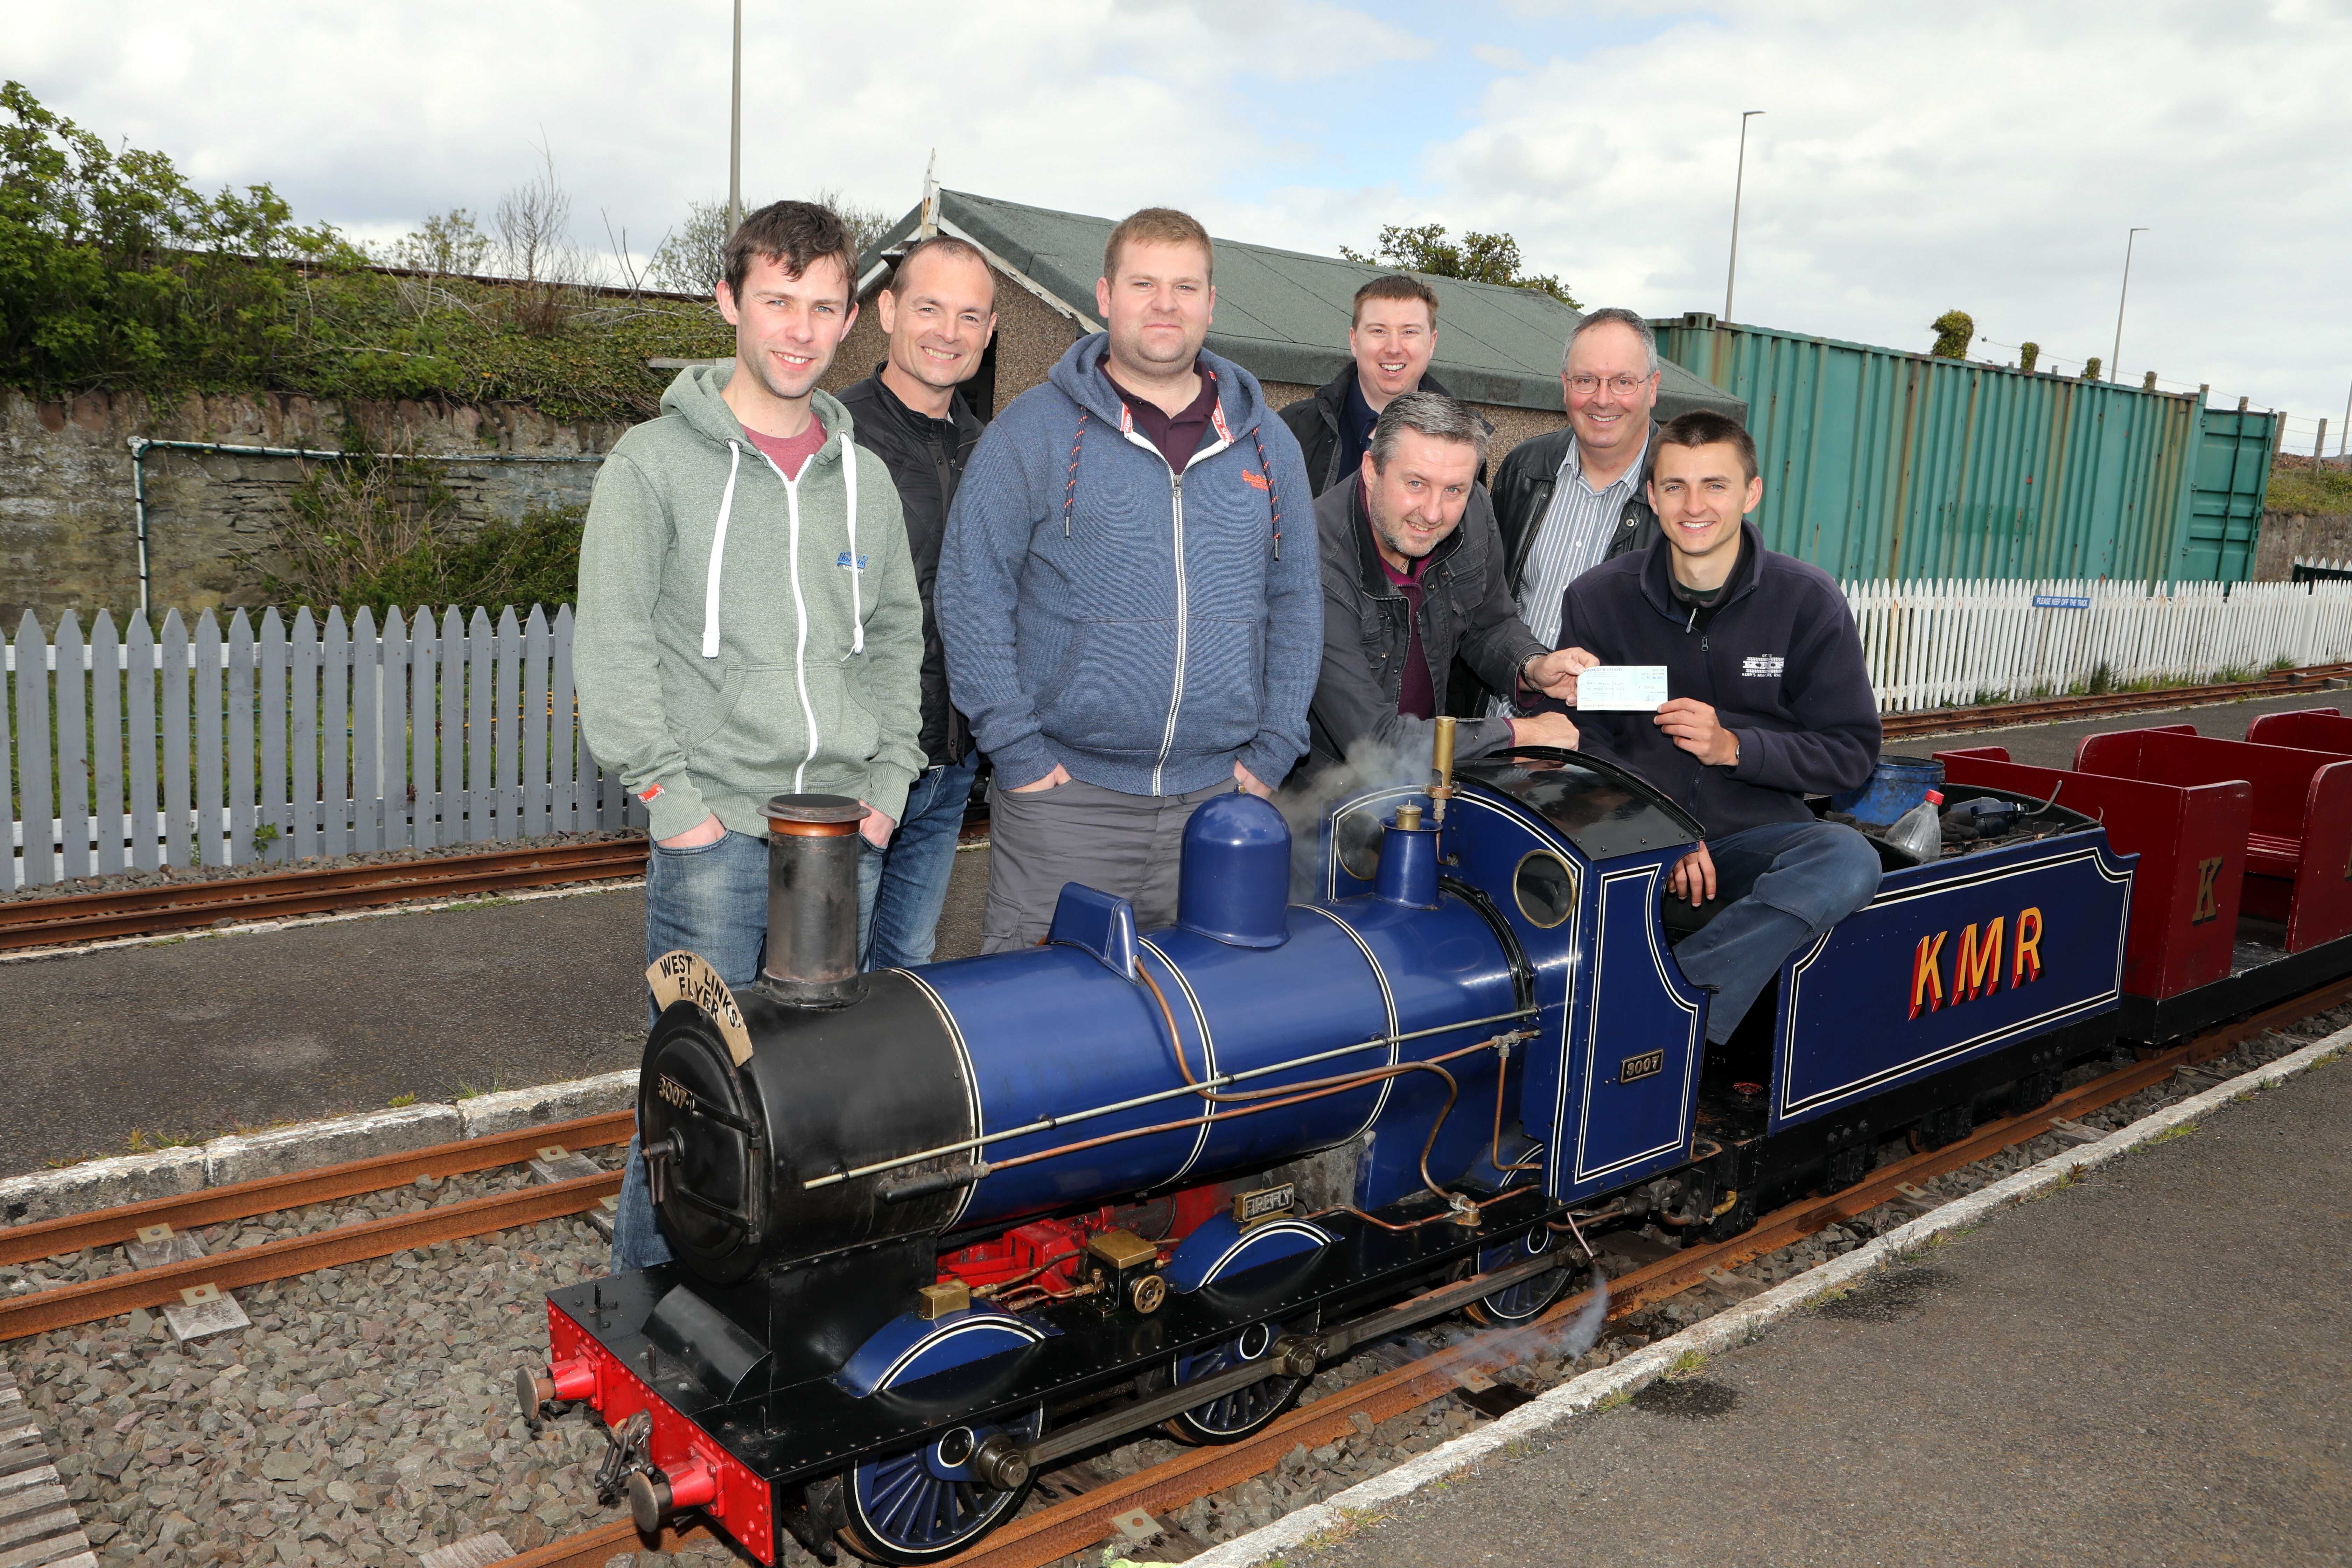 John Kerr of  Kerr's Miniature Railway in Arbroath receives the cheque from Richard Birse, Steven Brykajlo, Jordan Kearney, Derek Hoskins, Guy Houston and Jim Ramsay of Scot-Rail.co.uk